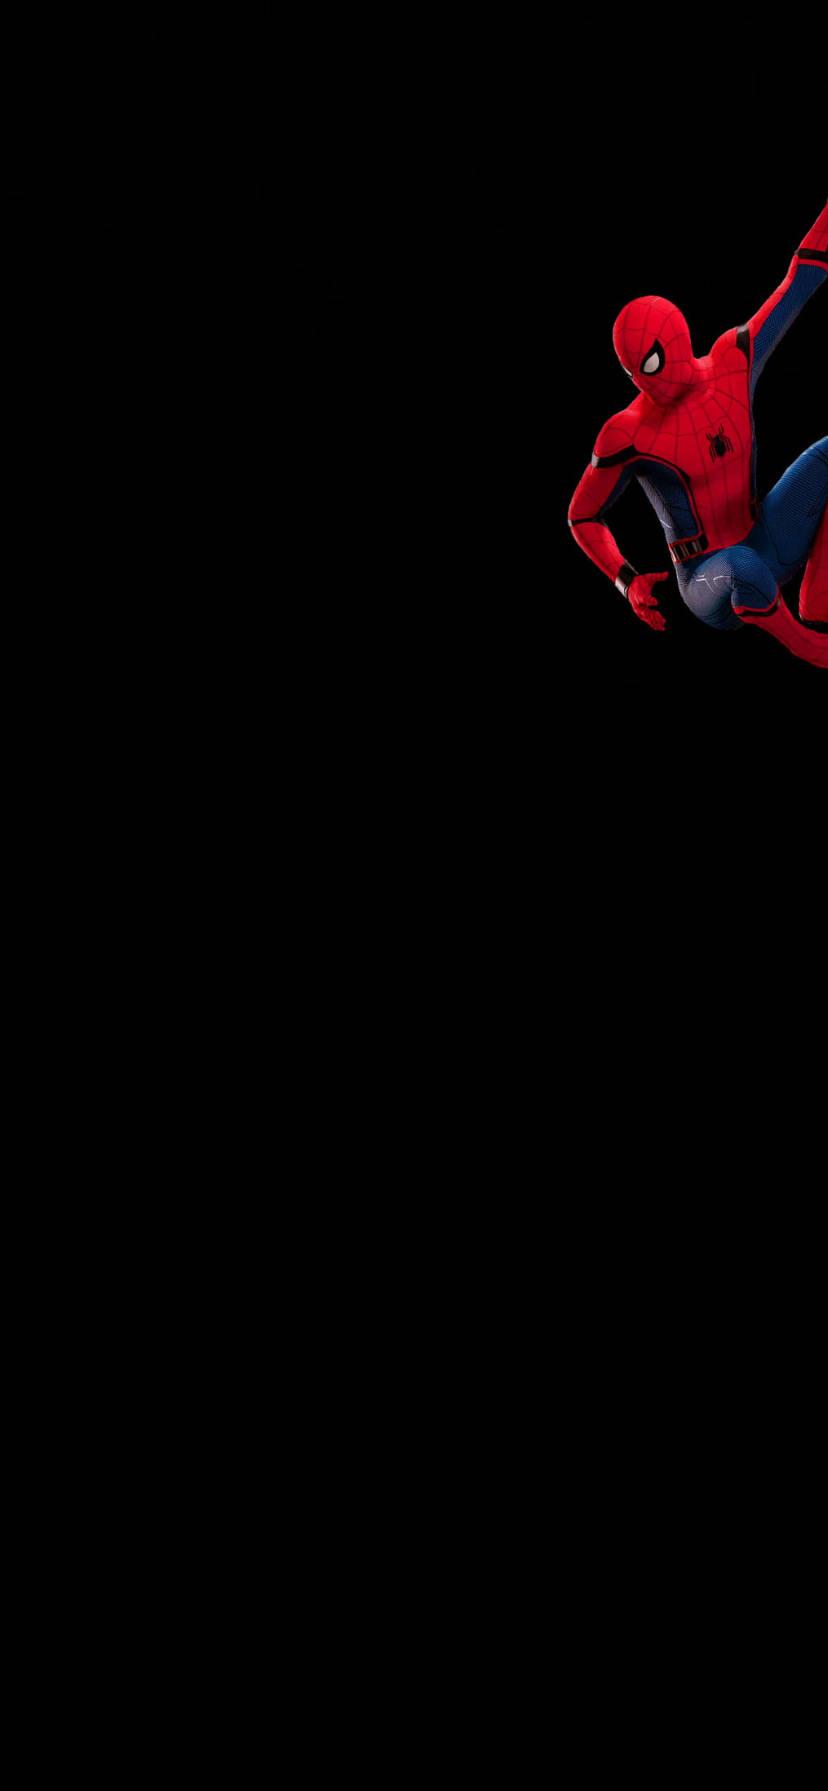 Spiderman Minimalist Marvel iPhone Xr Wallpaper